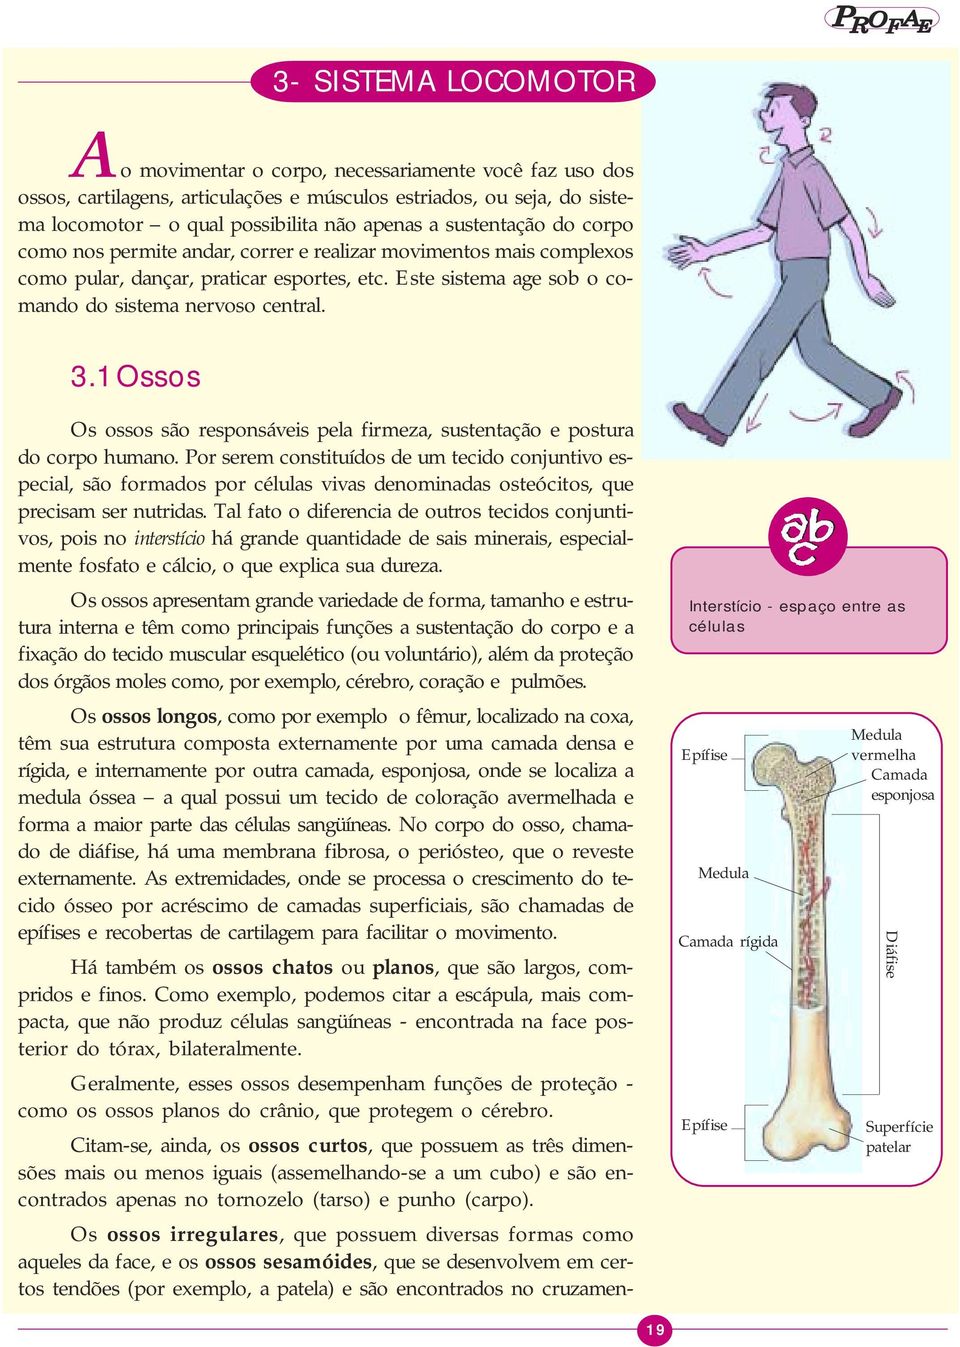 3.1 Ossos Os ossos são responsáveis pela firmeza, sustentação e postura do corpo humano.